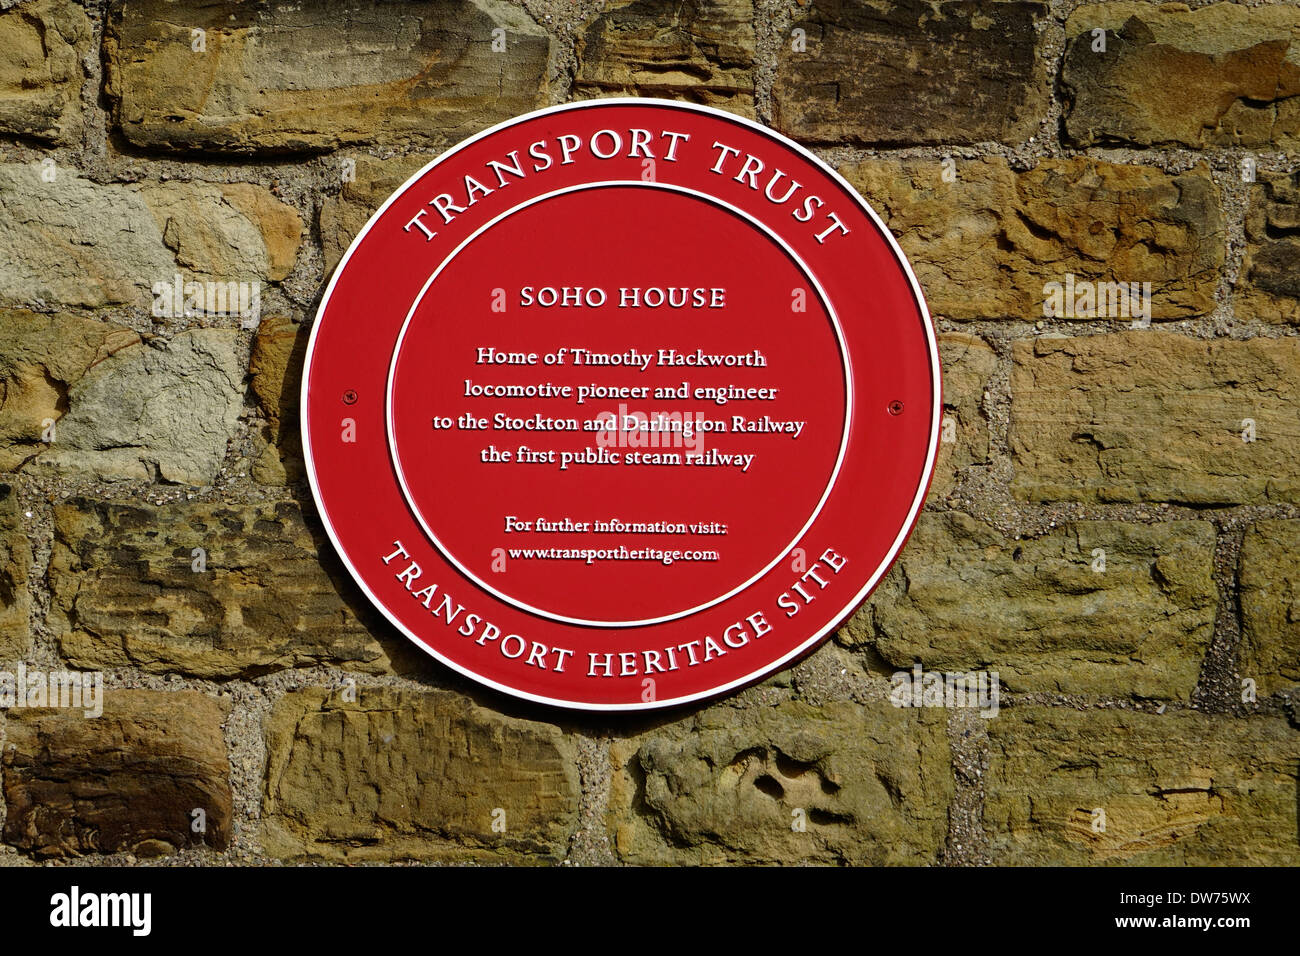 Rote Plakette auf Soho House, Heimat von Timothy Hackworth Eisenbahn-Pionier und Ingenieur von der Stockton and Darlington Railway Stockfoto